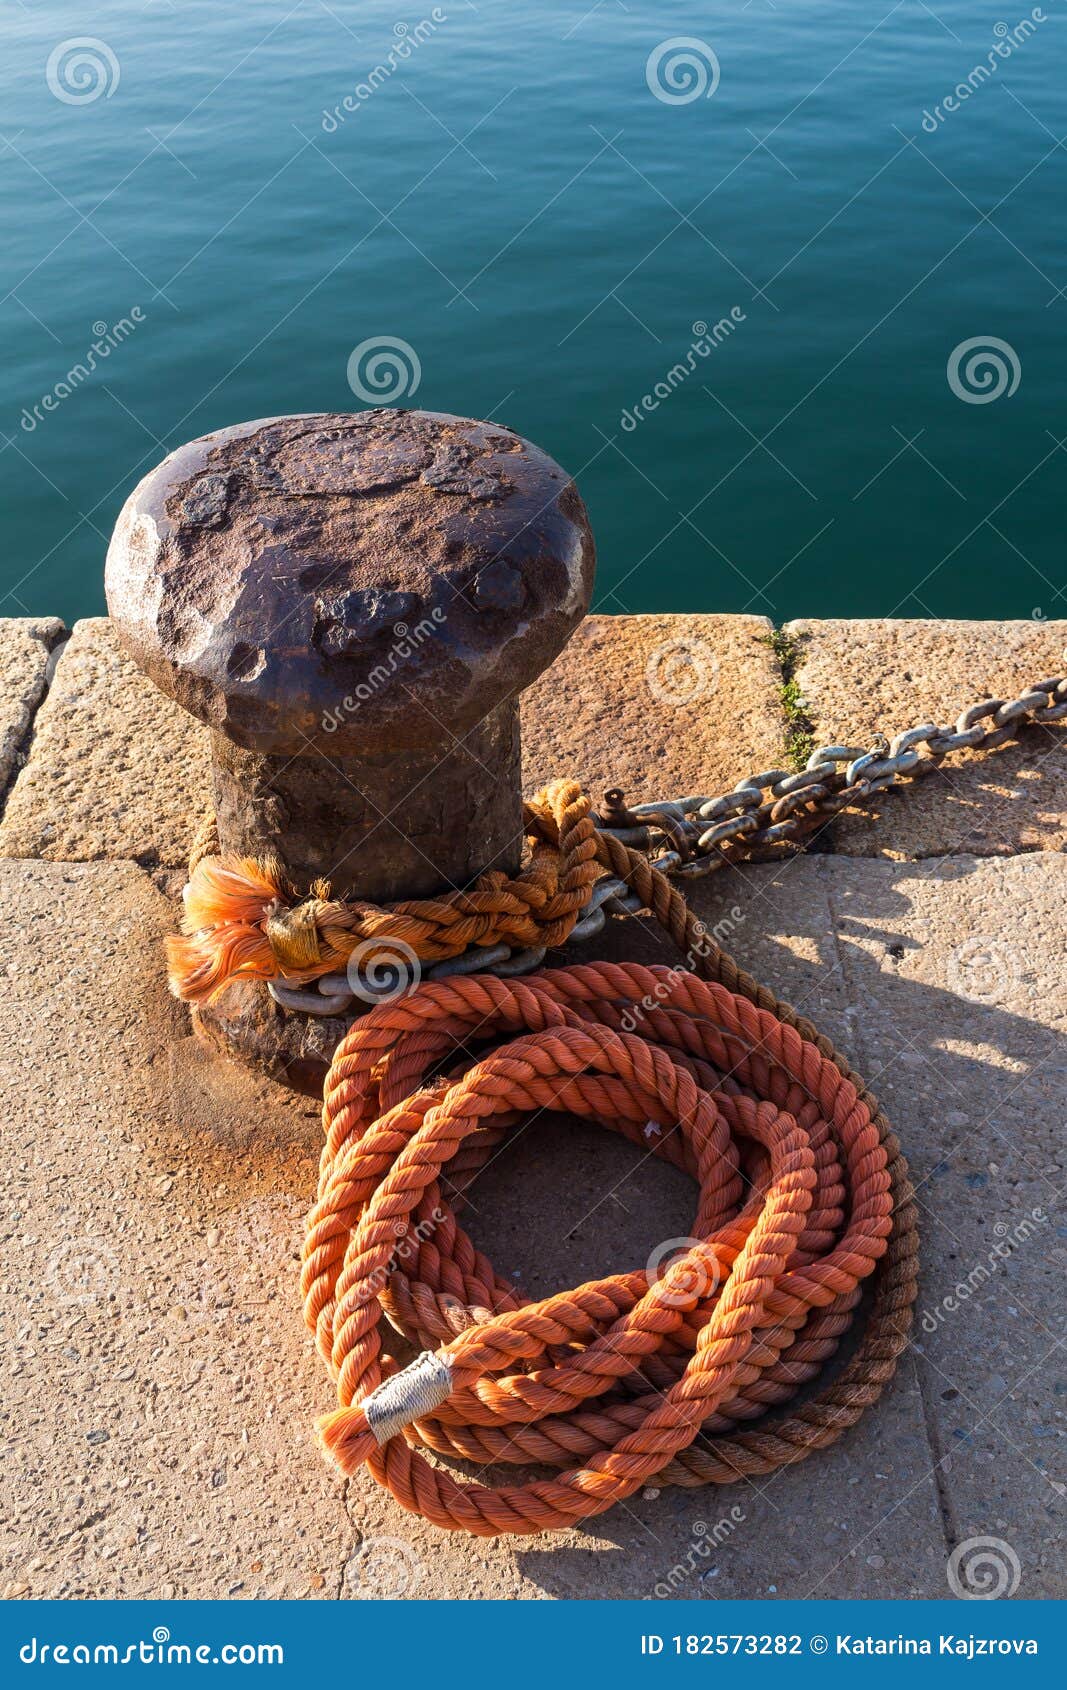 Bollard, Orange Roap and a Sea Stock Photo - Image of nautical